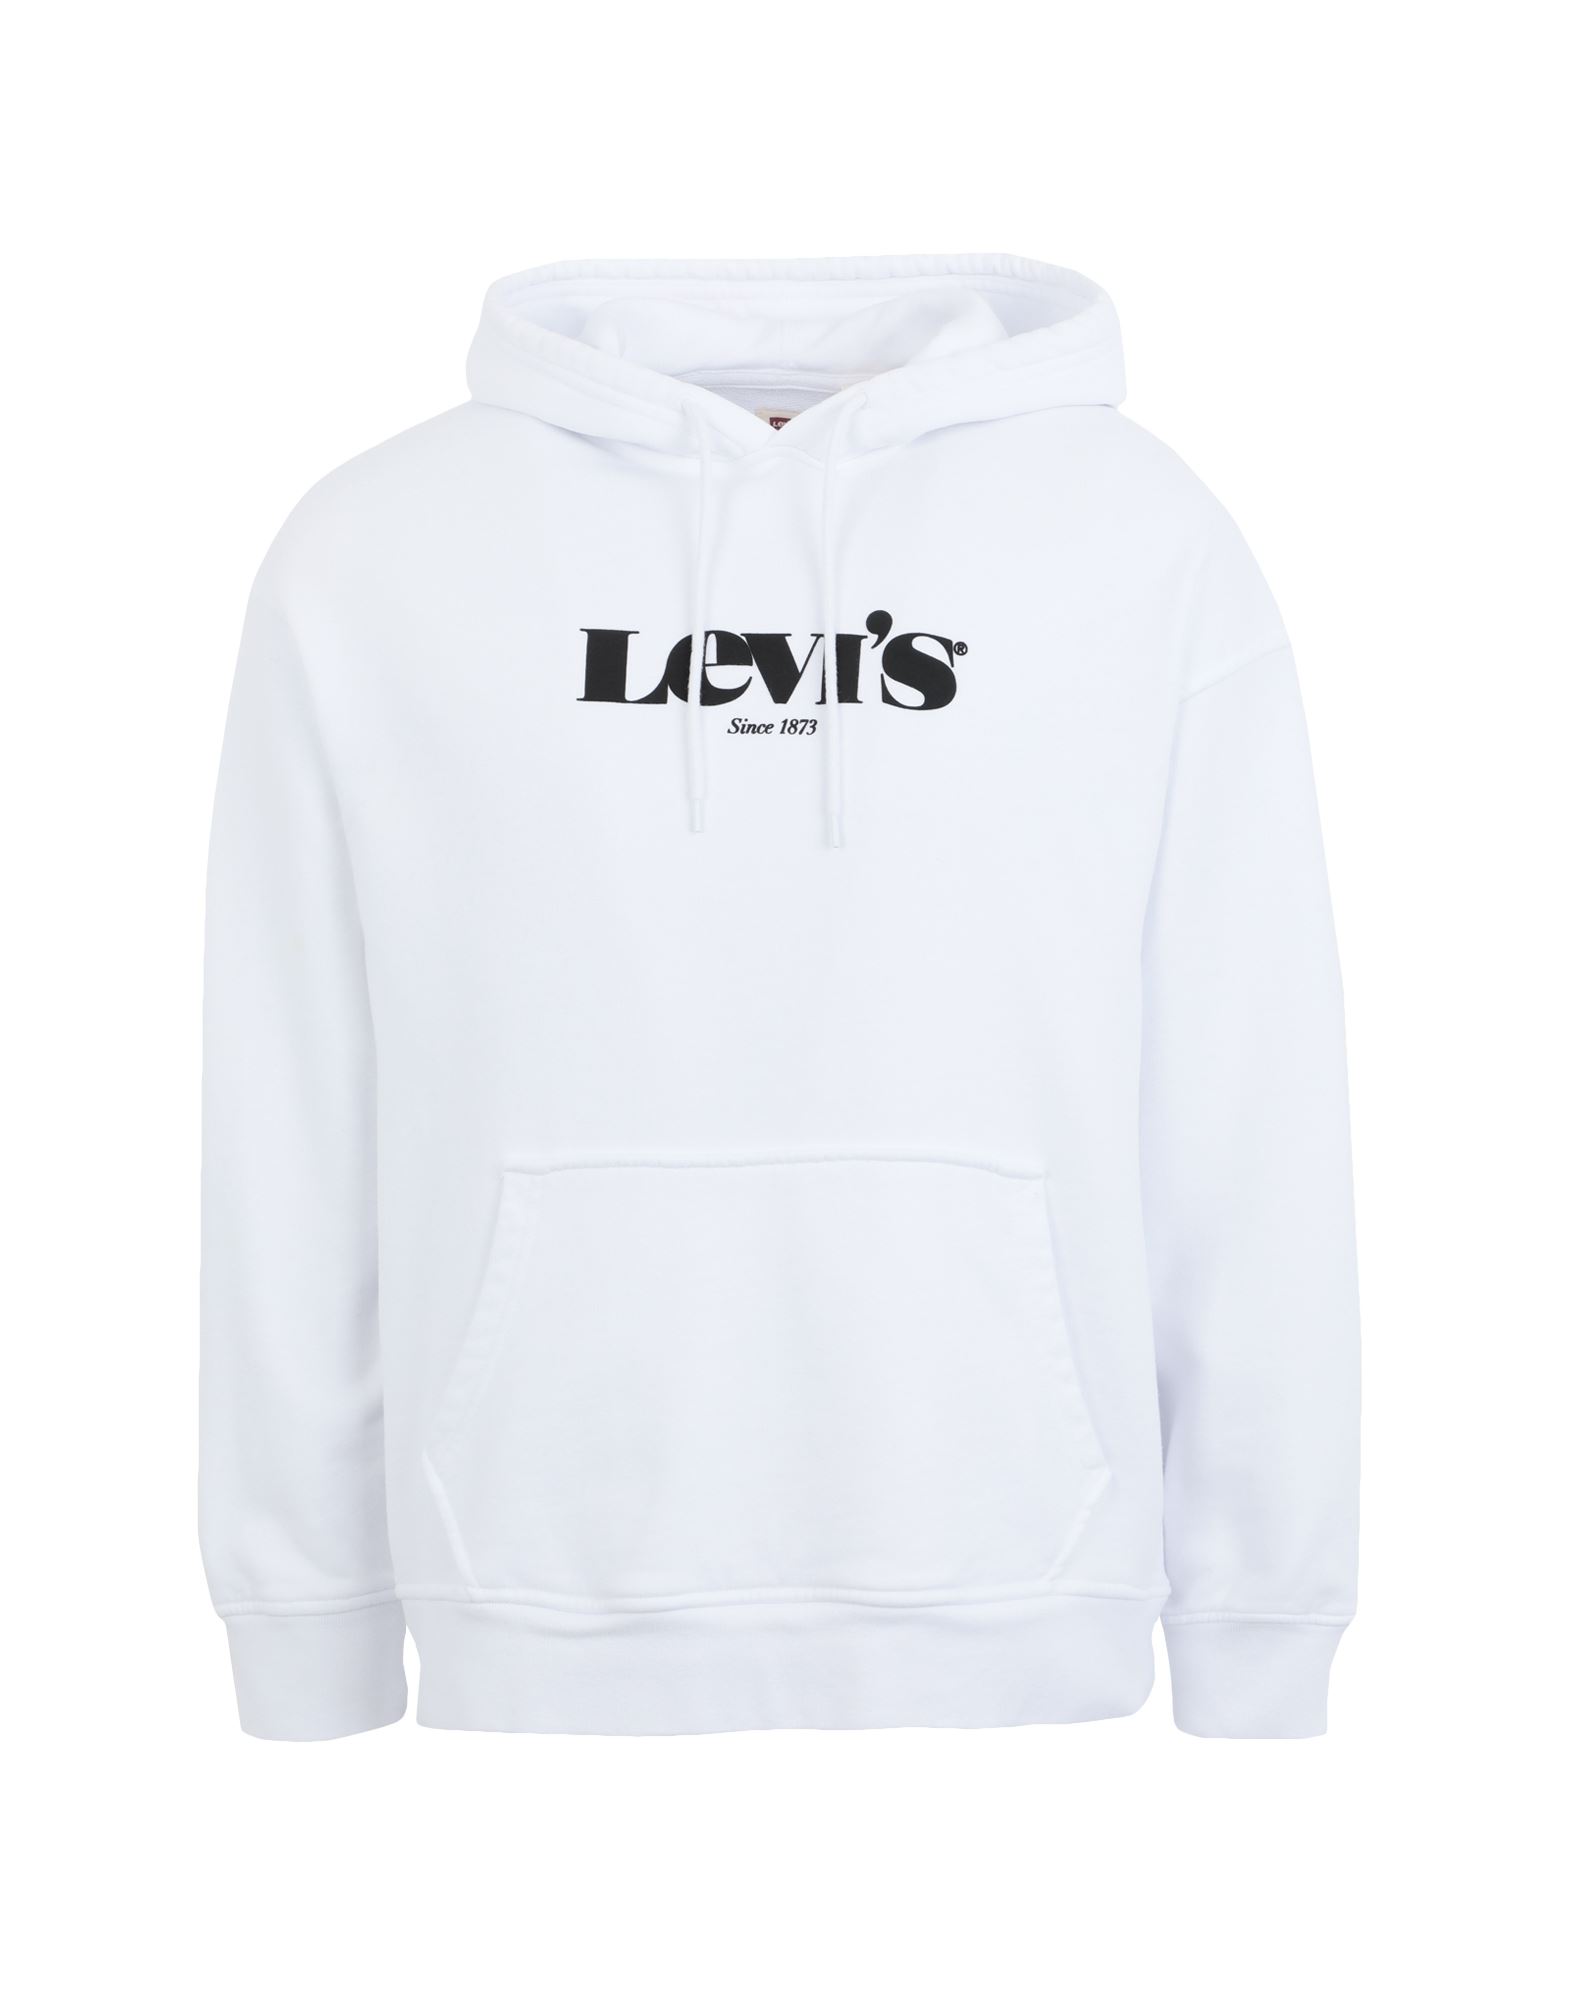 LEVI'S Sweatshirt Herren Weiß von LEVI'S